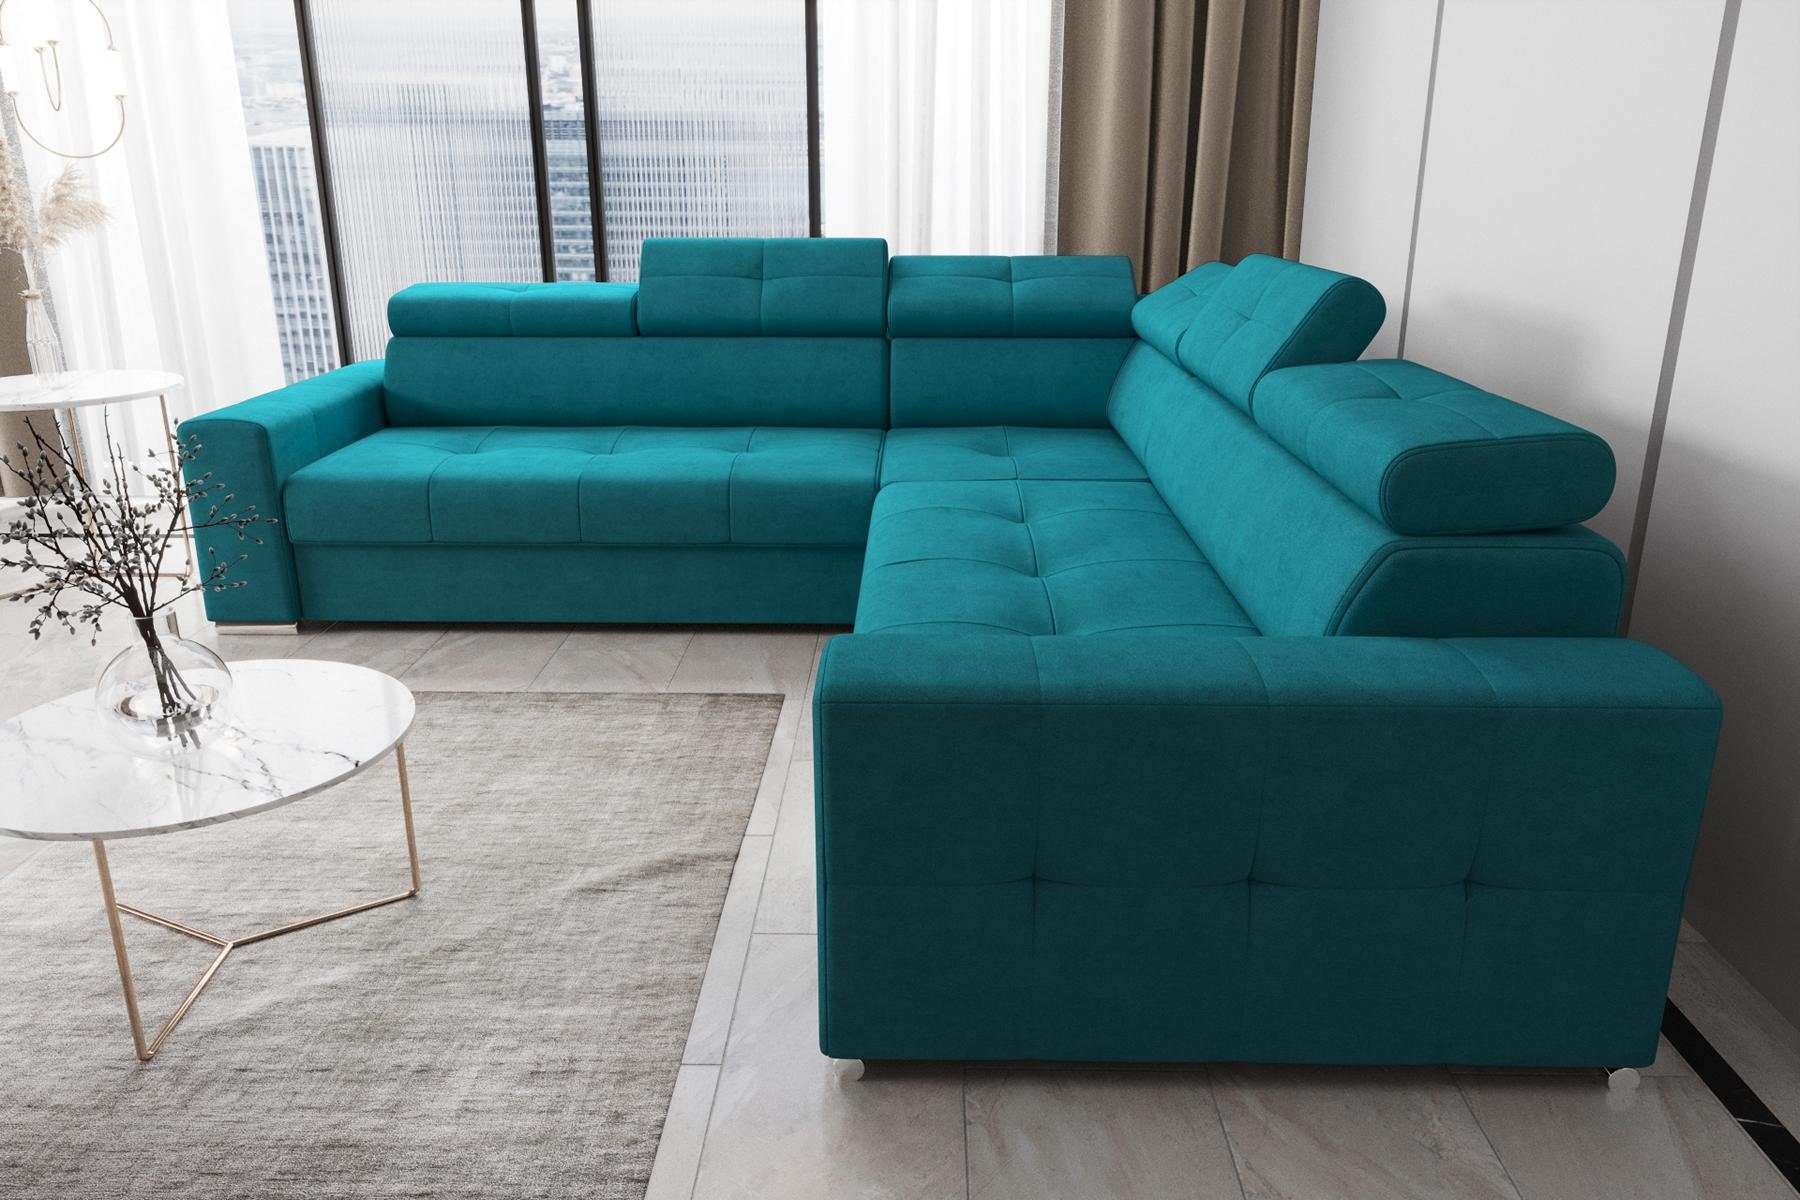 JVmoebel Ecksofa Wohnzimmer Textil Ecksofa Form Blau Leder Made Luxus Couch, Modern Europe L in